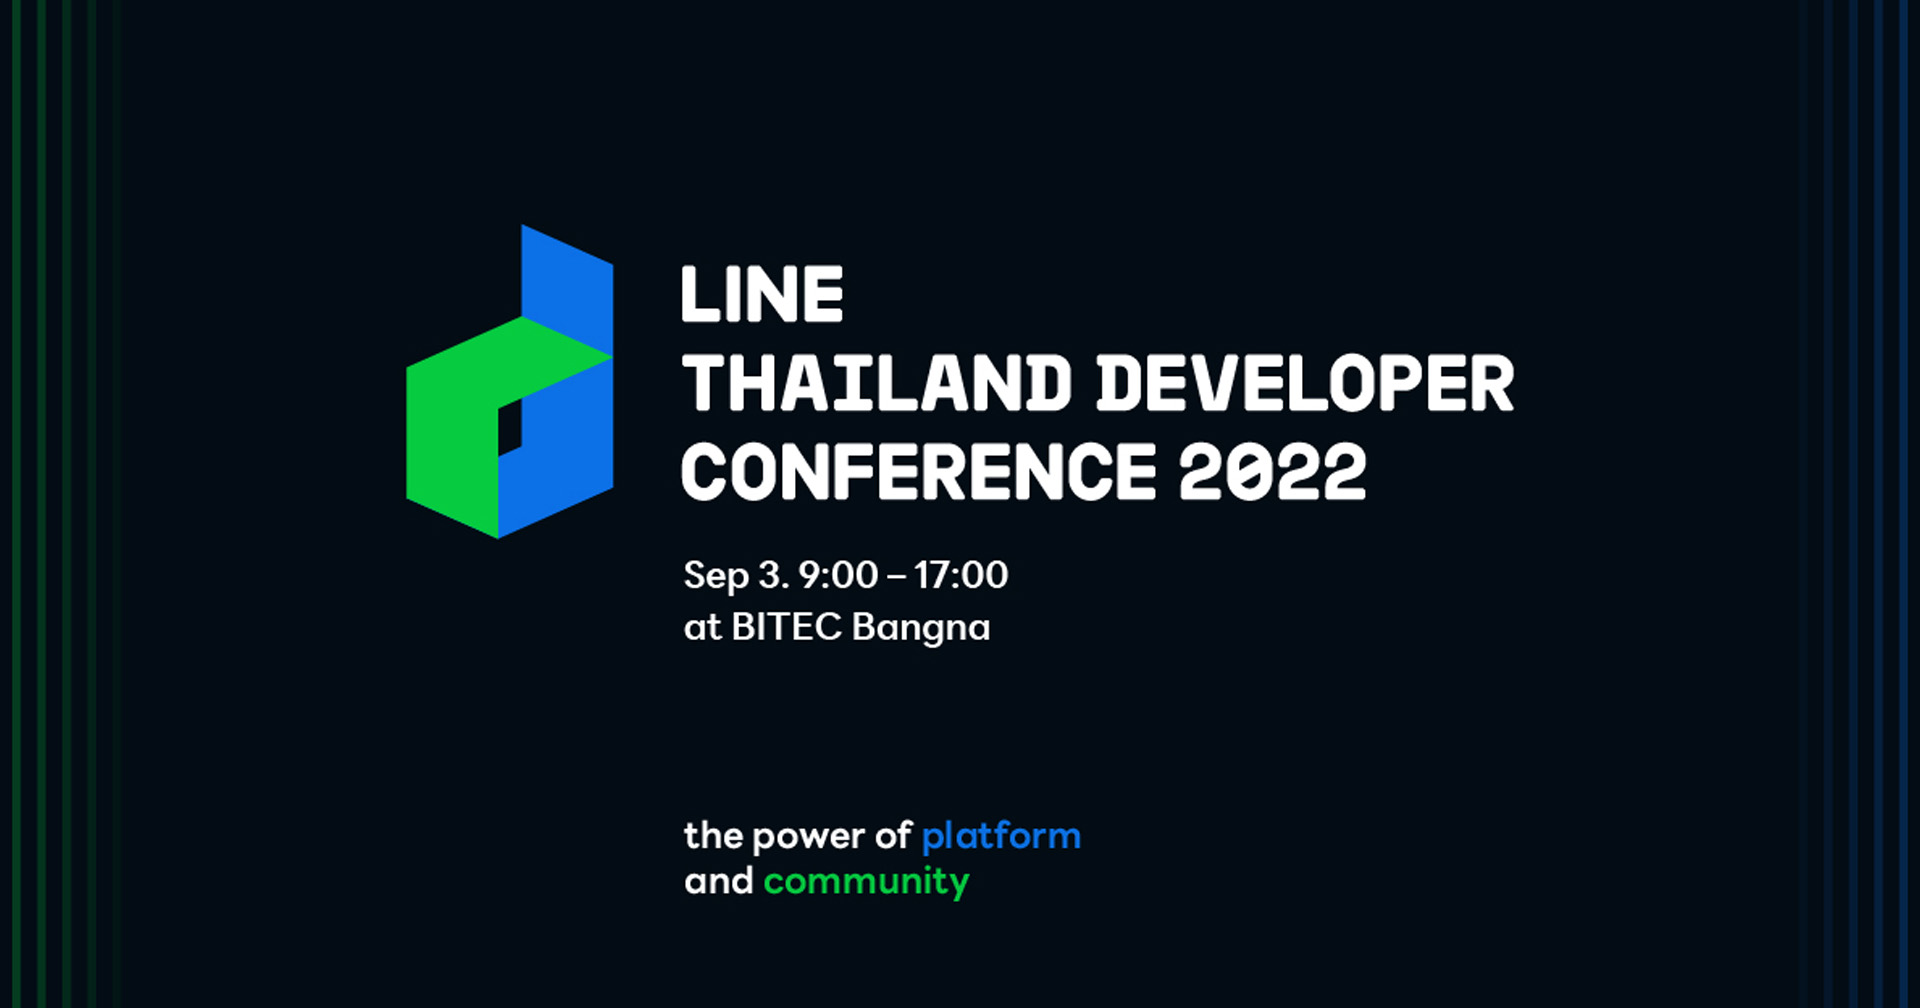 กลับมาอีกครั้งกับ LINE THAILAND DEVELOPER CONFERENCE 2022 อีเวนท์ด้านเทคโนโลยีครั้งใหญ่แห่งปีจาก LINE ประเทศไทย